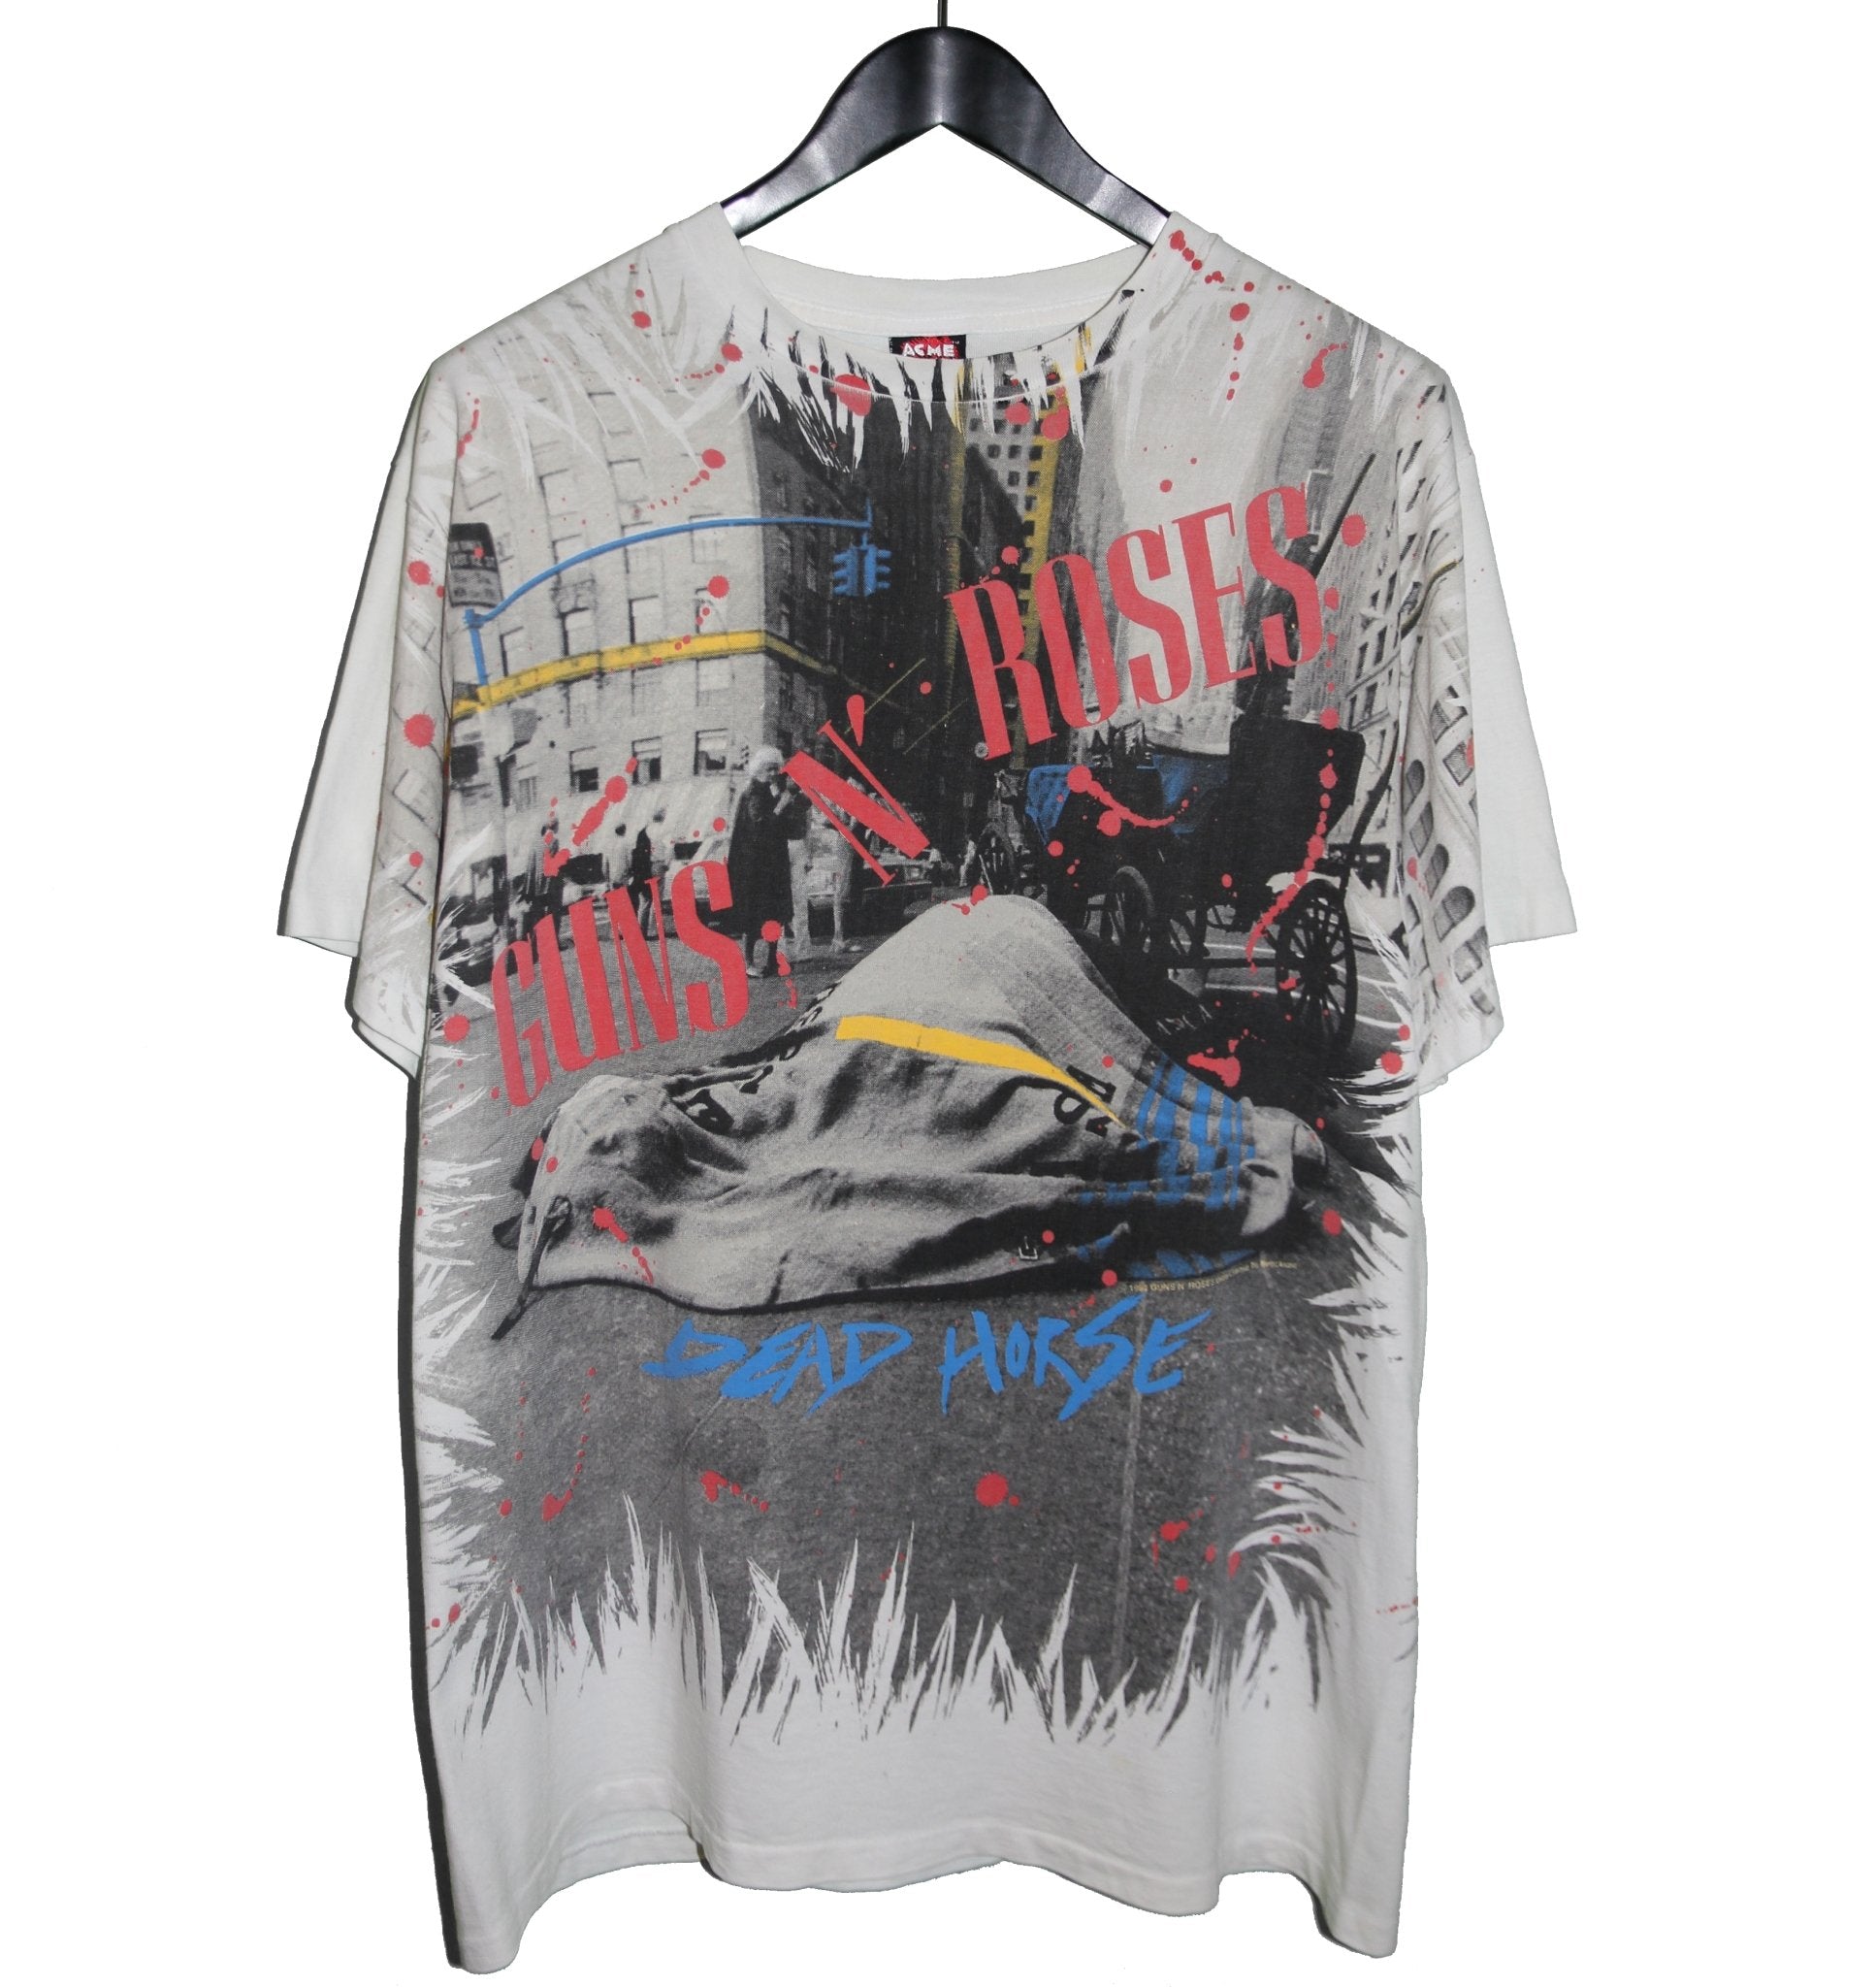 Guns N' Roses 1992 Dead Horse All Over Print Shirt - Faded AU